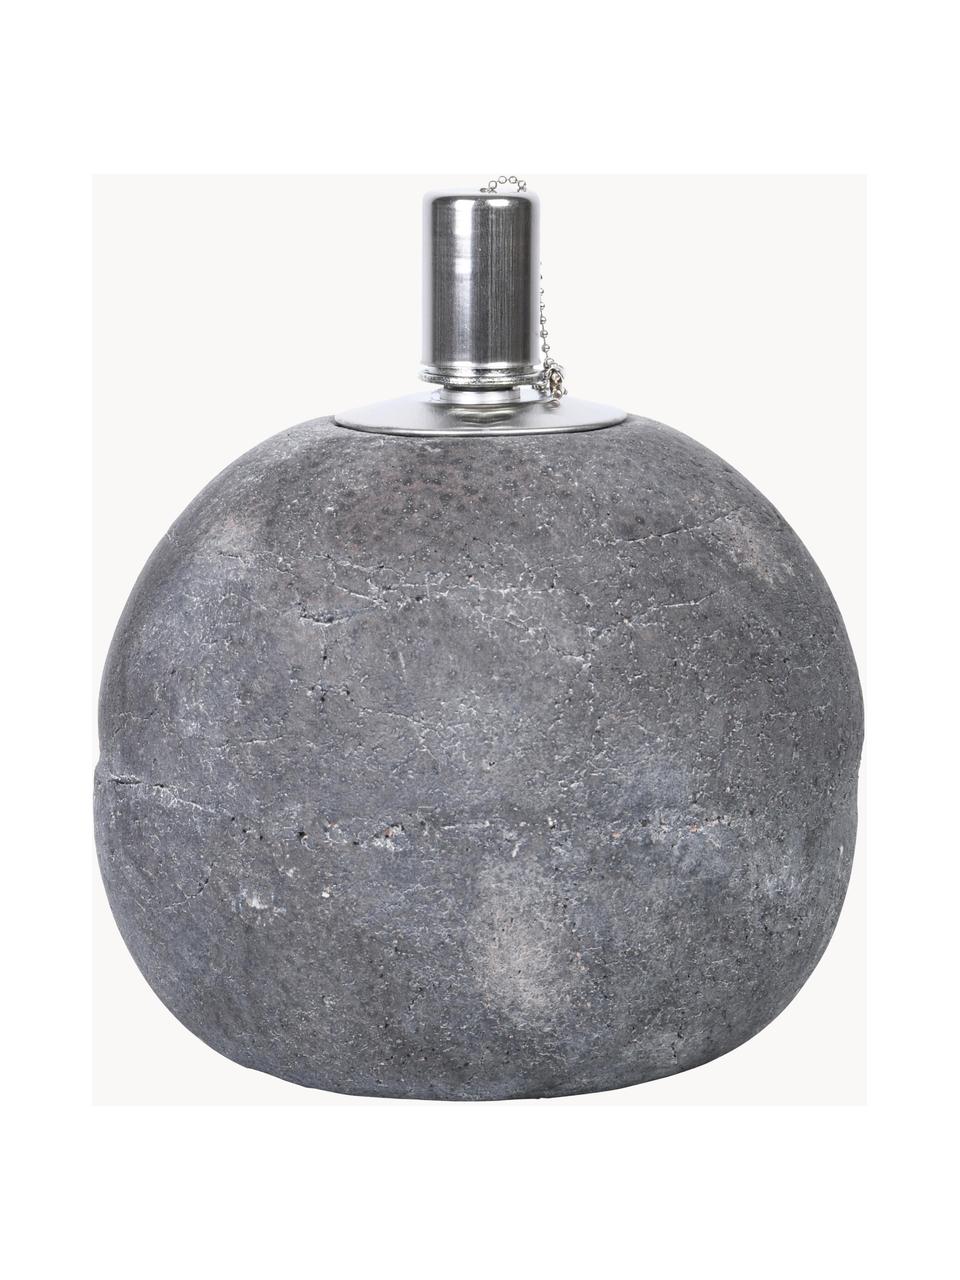 Lampada a olio in cemento Raw, Cemento, acciaio inossidabile, Grigio, argentato, Ø 14 x Alt. 17 cm